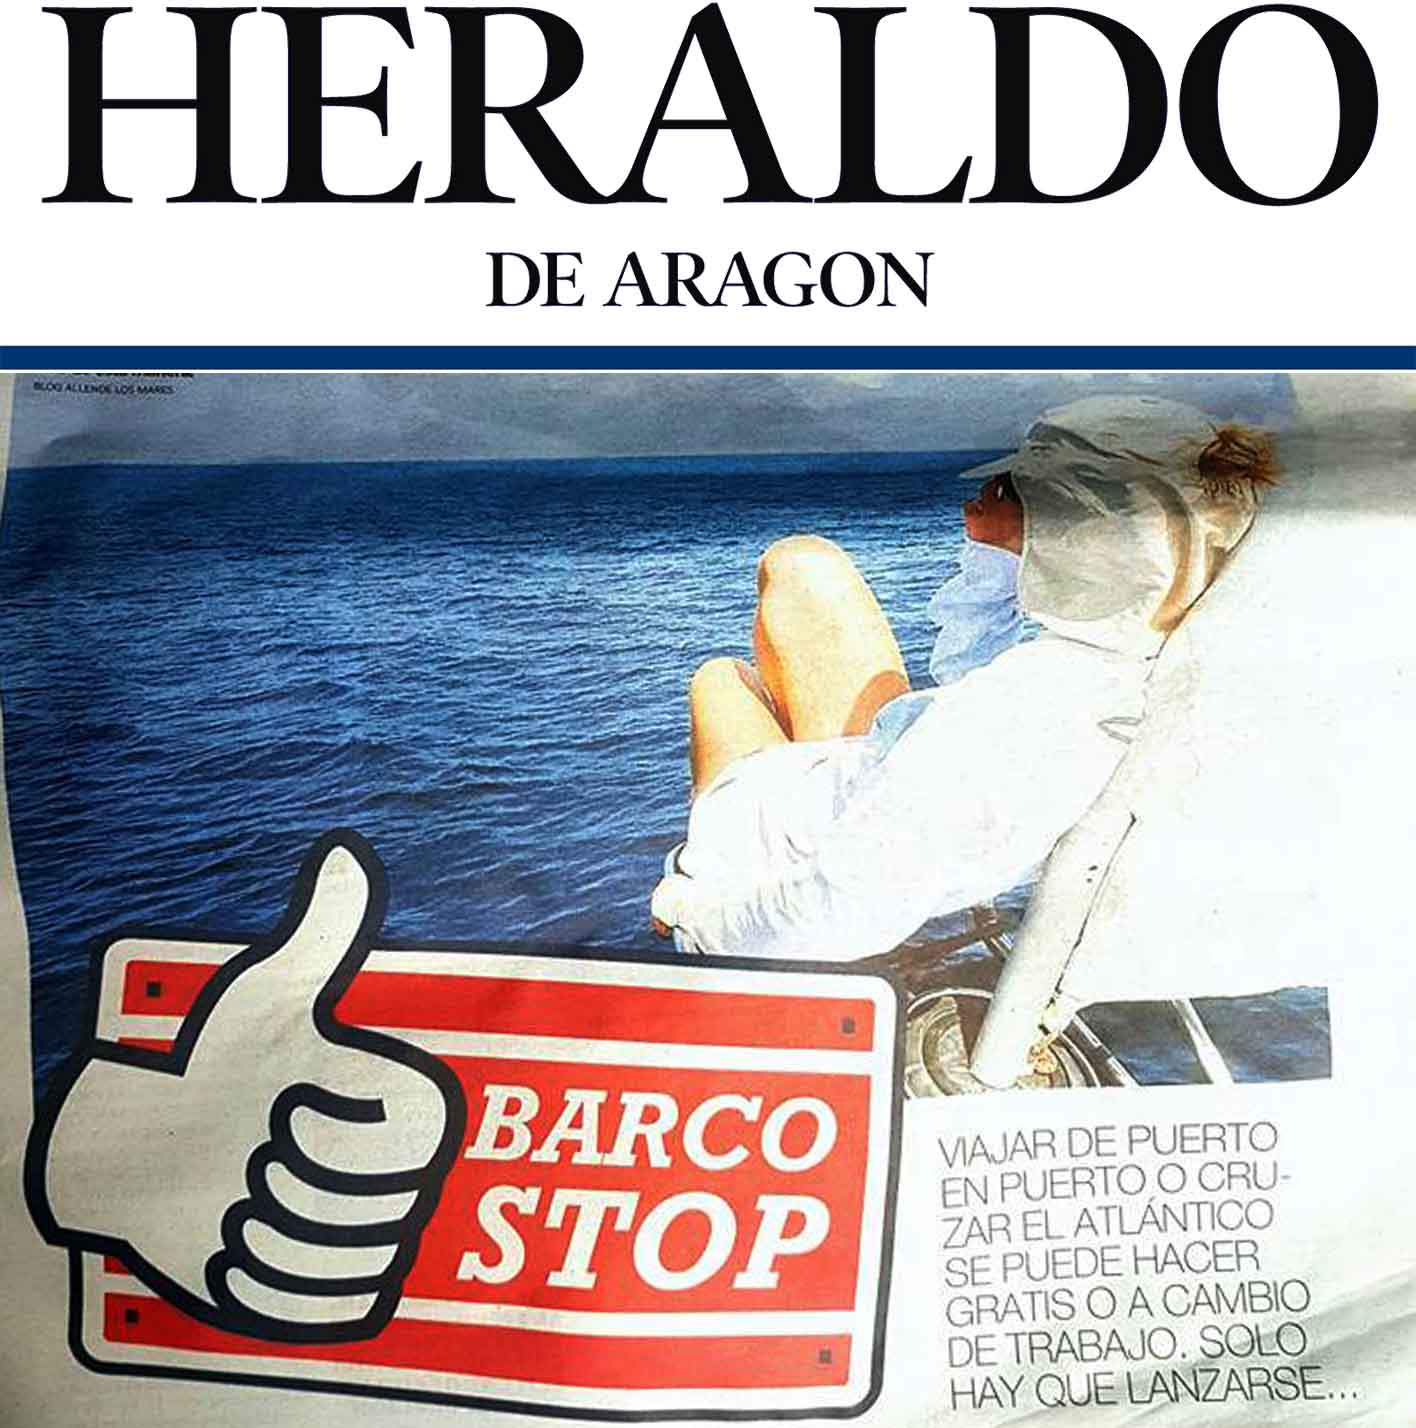 Heraldo de Aragón entrevista a Allende los mares sobre Barcostop